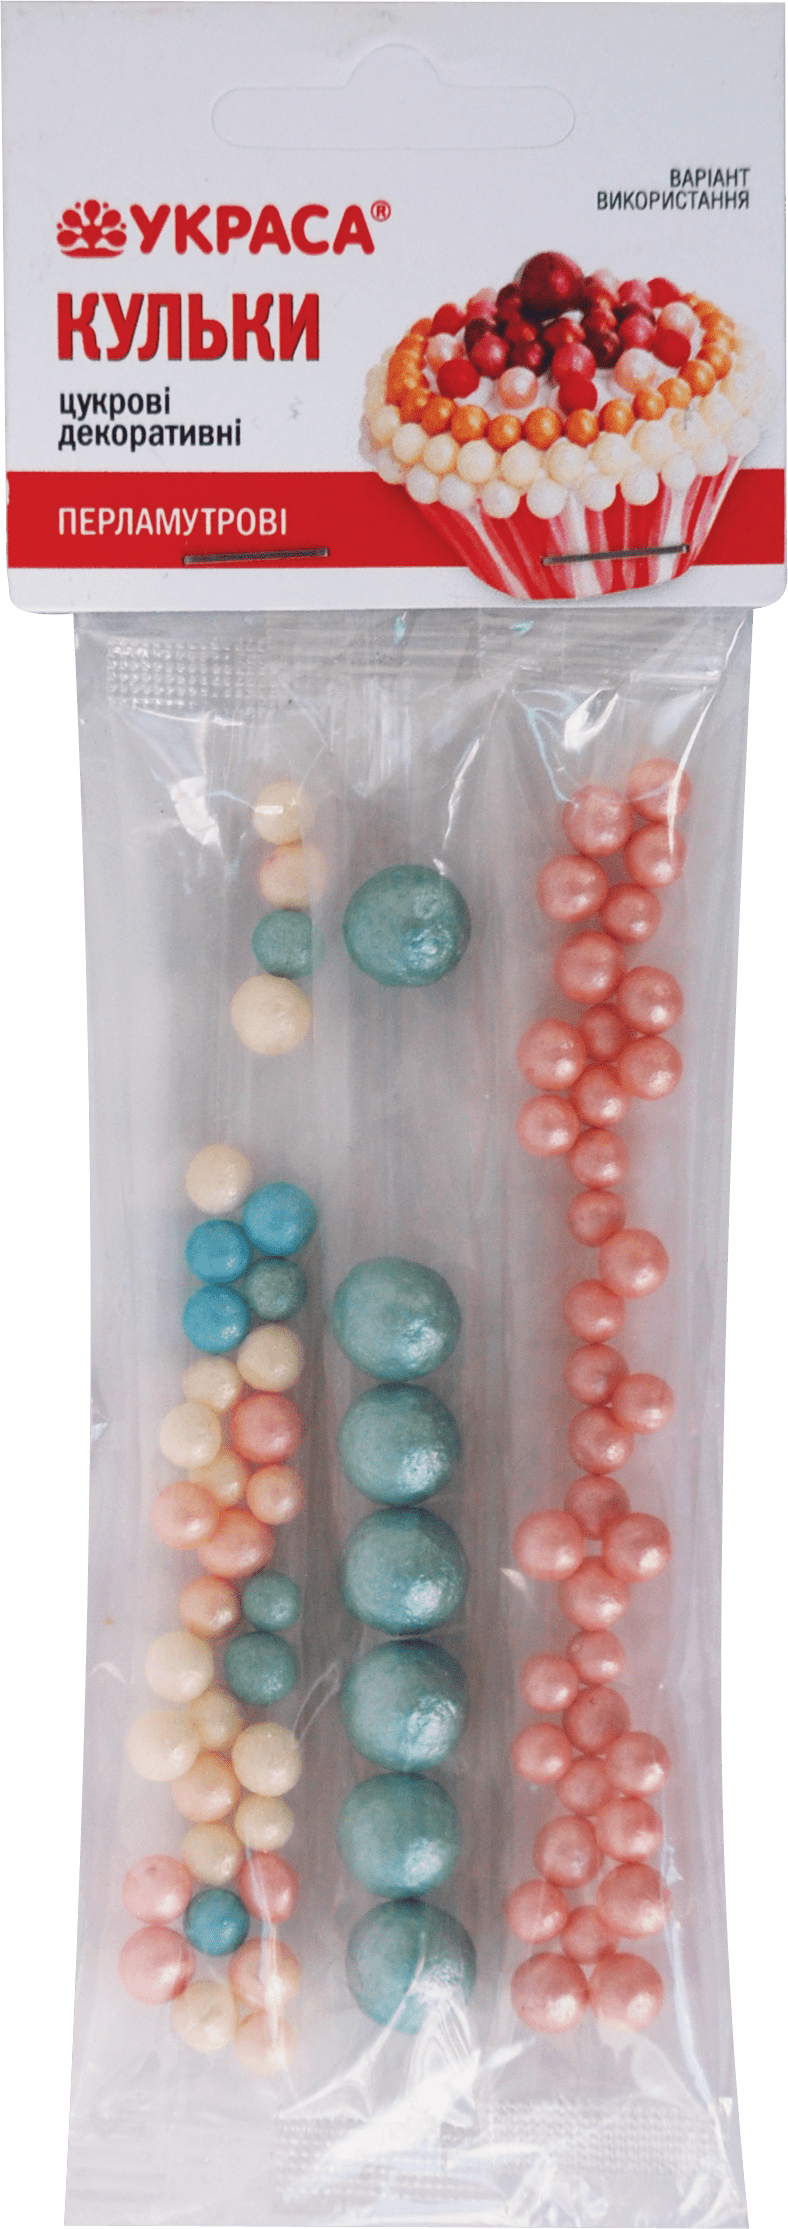 Сахарные шарики Украса декоративные перламутр 3 стики, 17 г, 1 упаковка